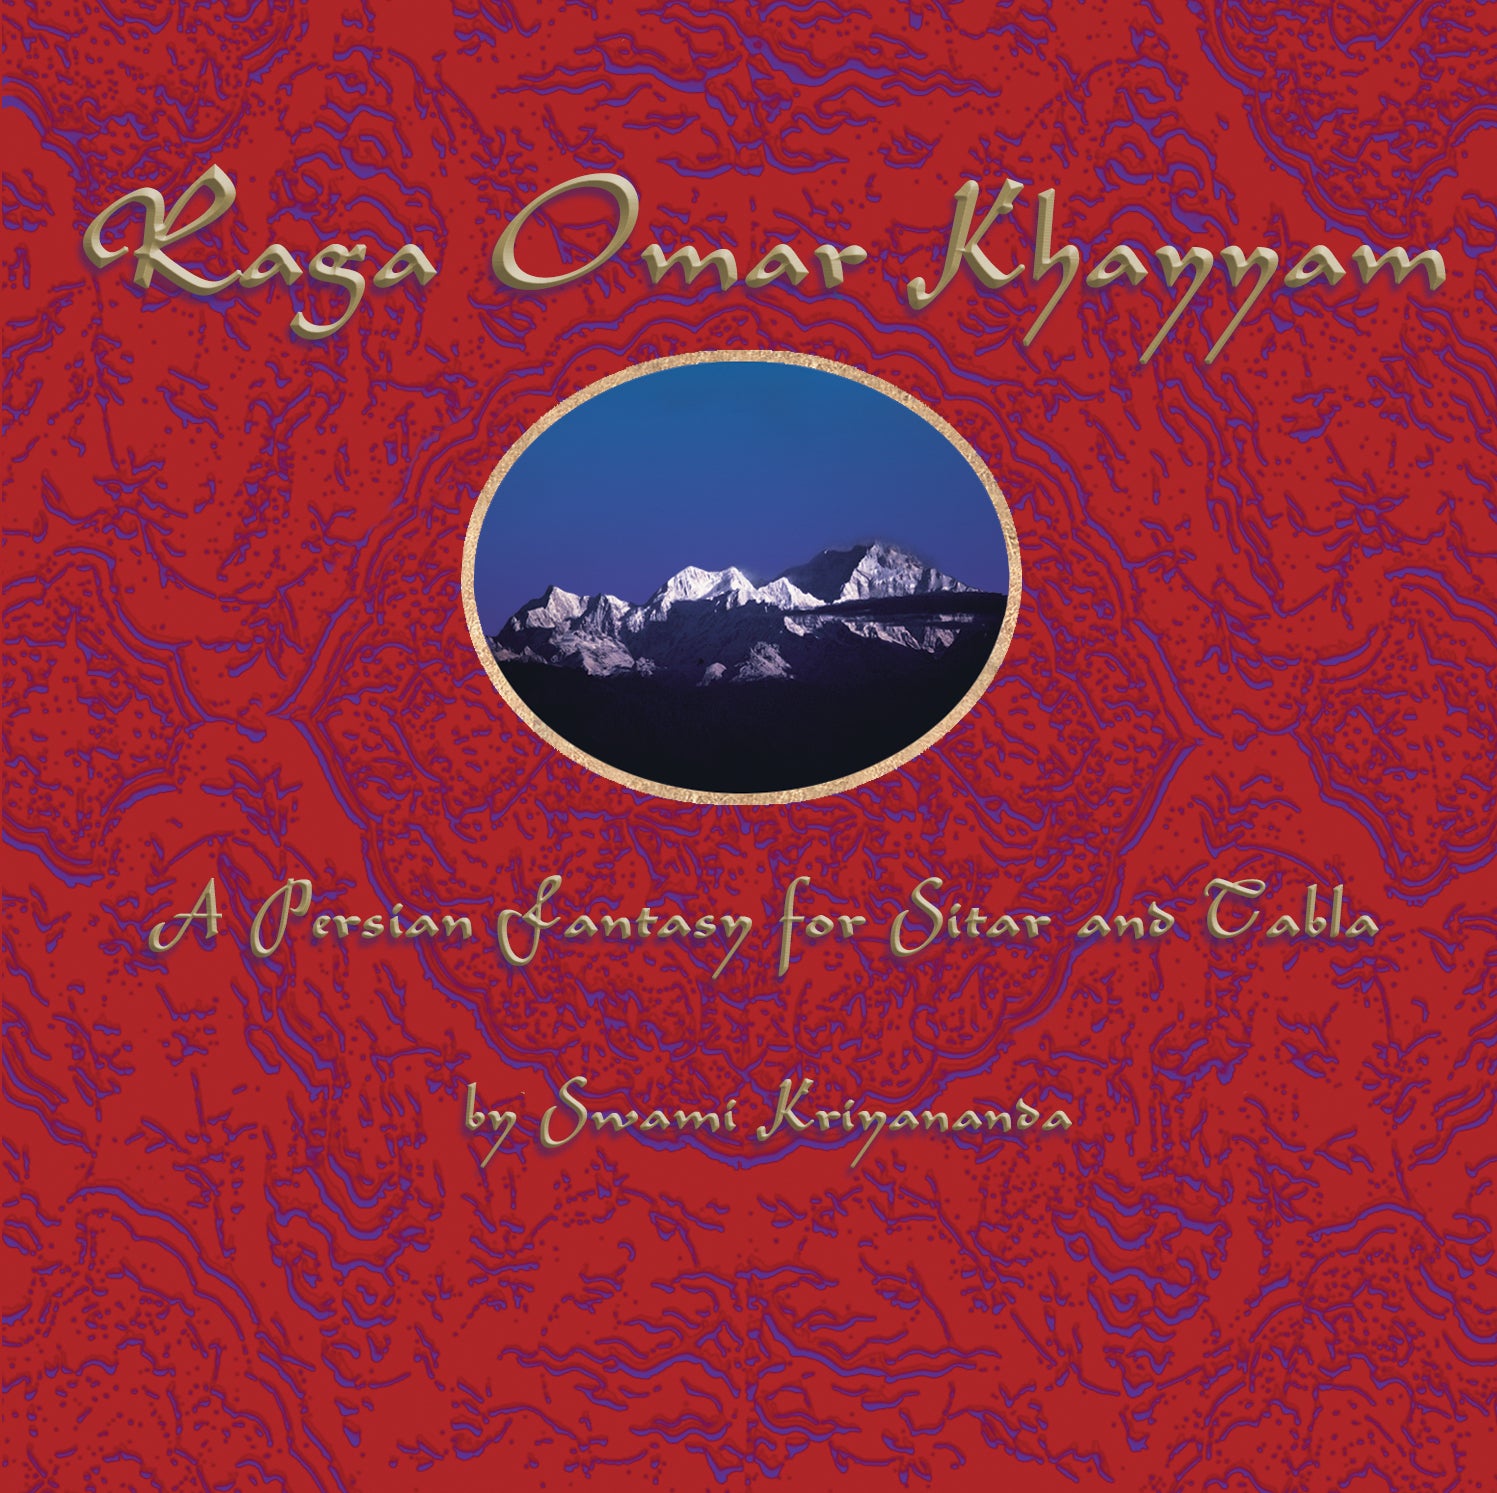 Raga Omar Khayyam